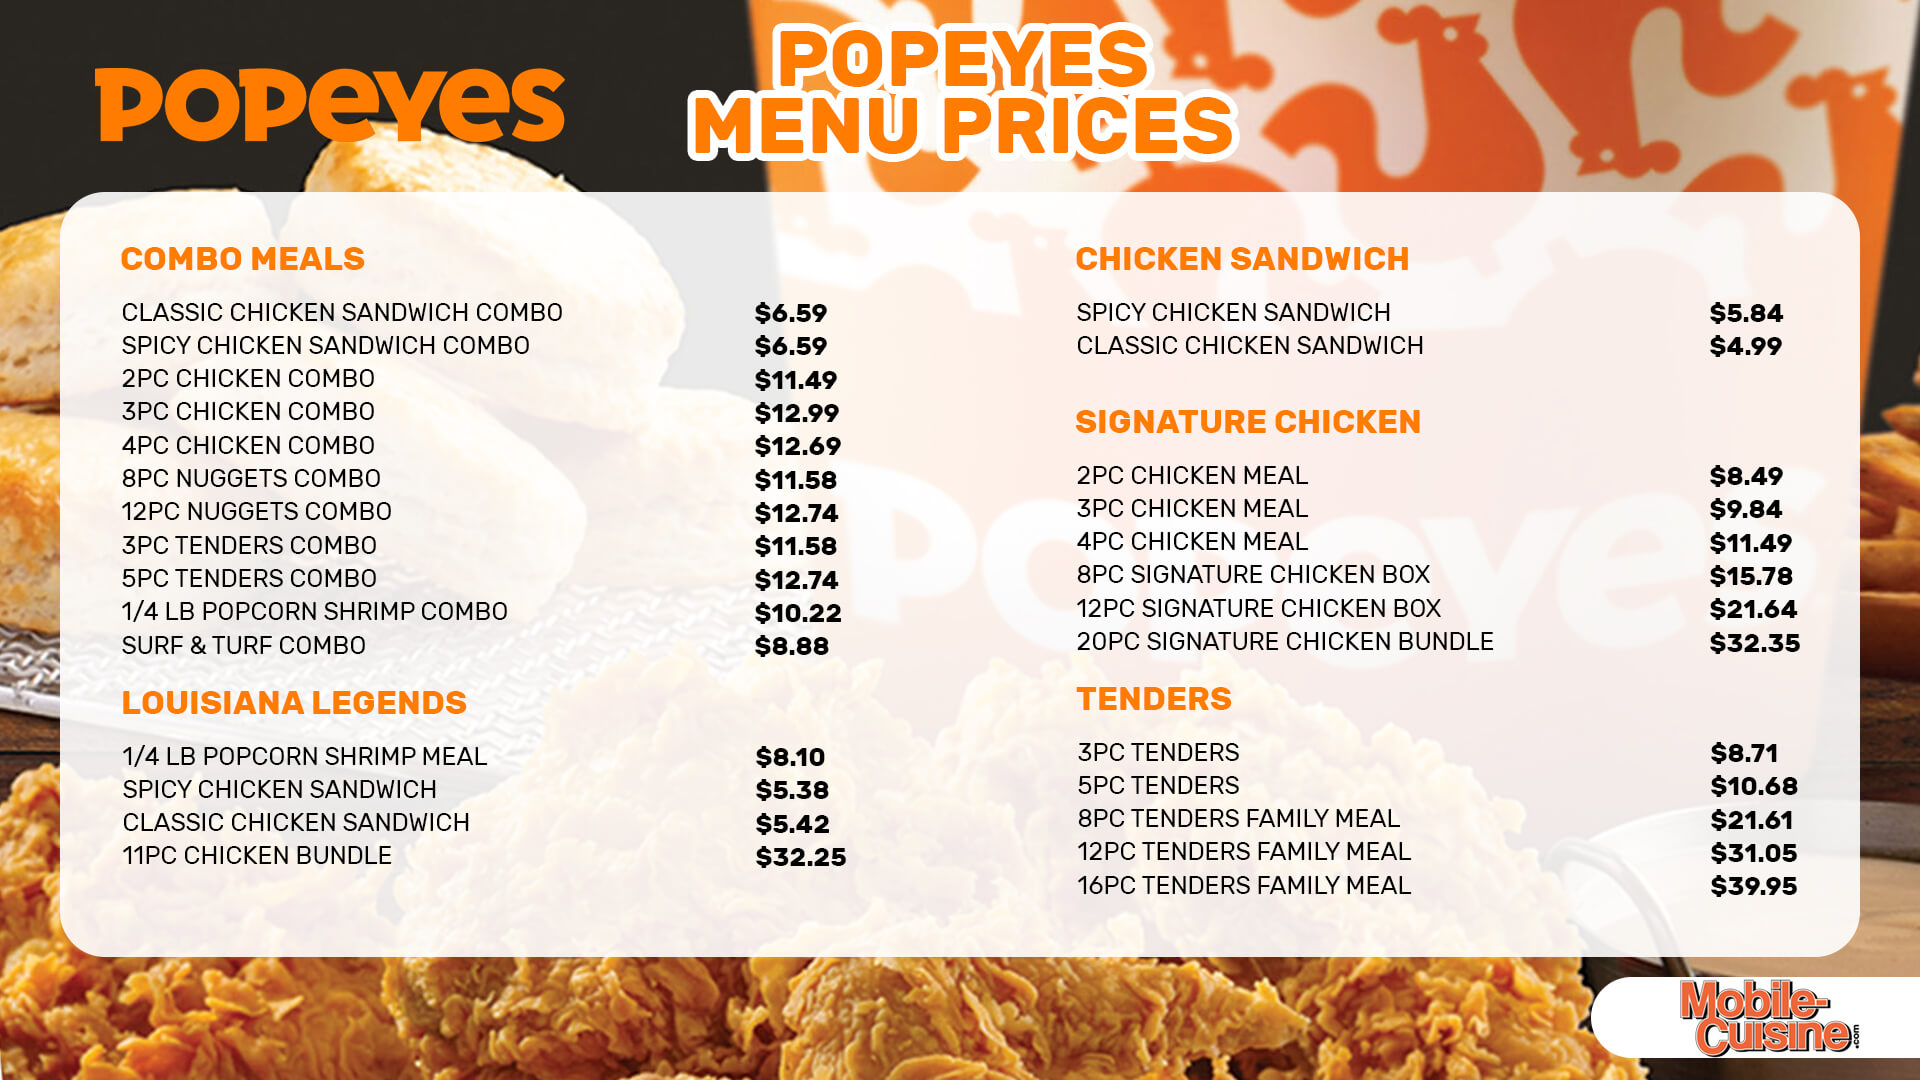 Popeyes menu prices